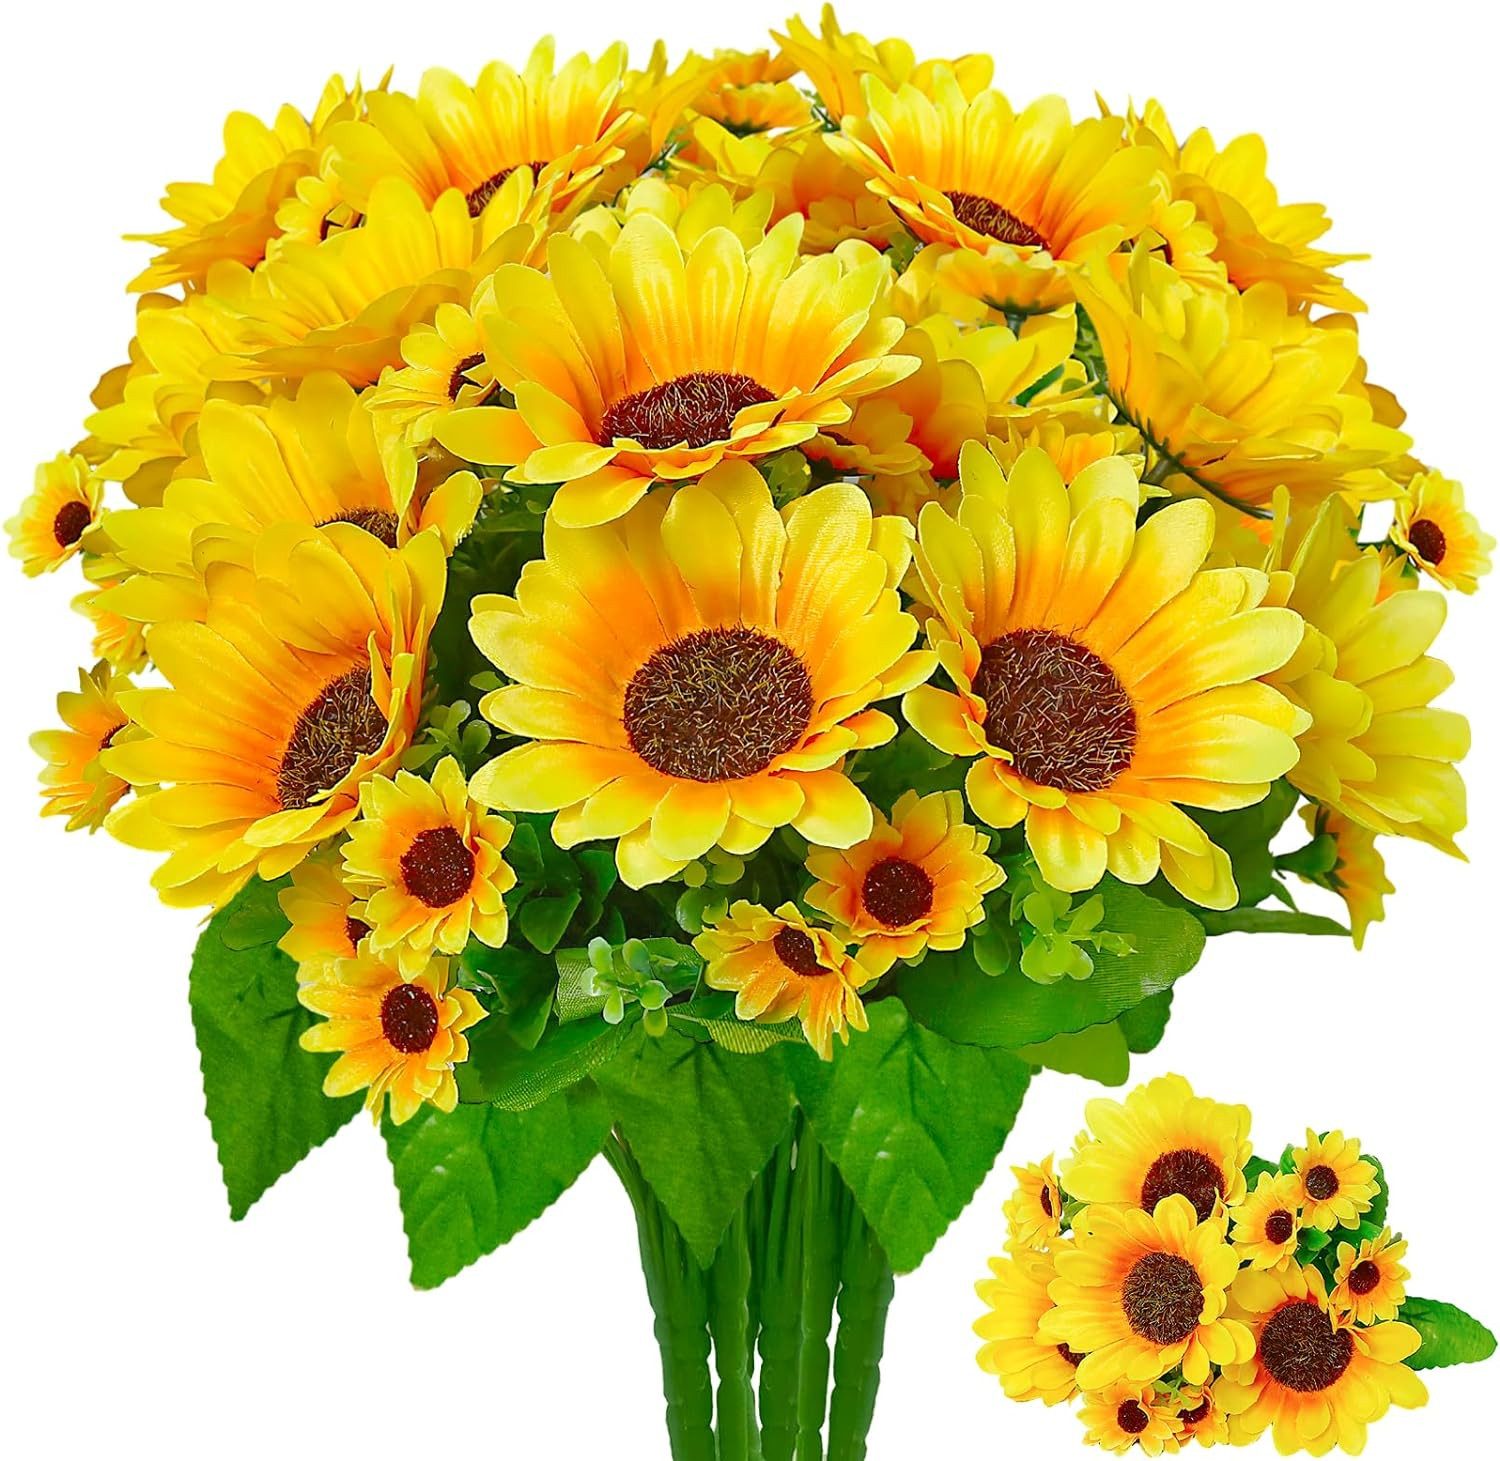 Kunstblume Kunstblumen Deko Sonnenblumen Künstlich kein Verblassen 4 Bündel Sonnenblumen Künstlich, GOOLOO, Natürlich realistisch zart und schön für Veranda, Garten, Wohnzimmer